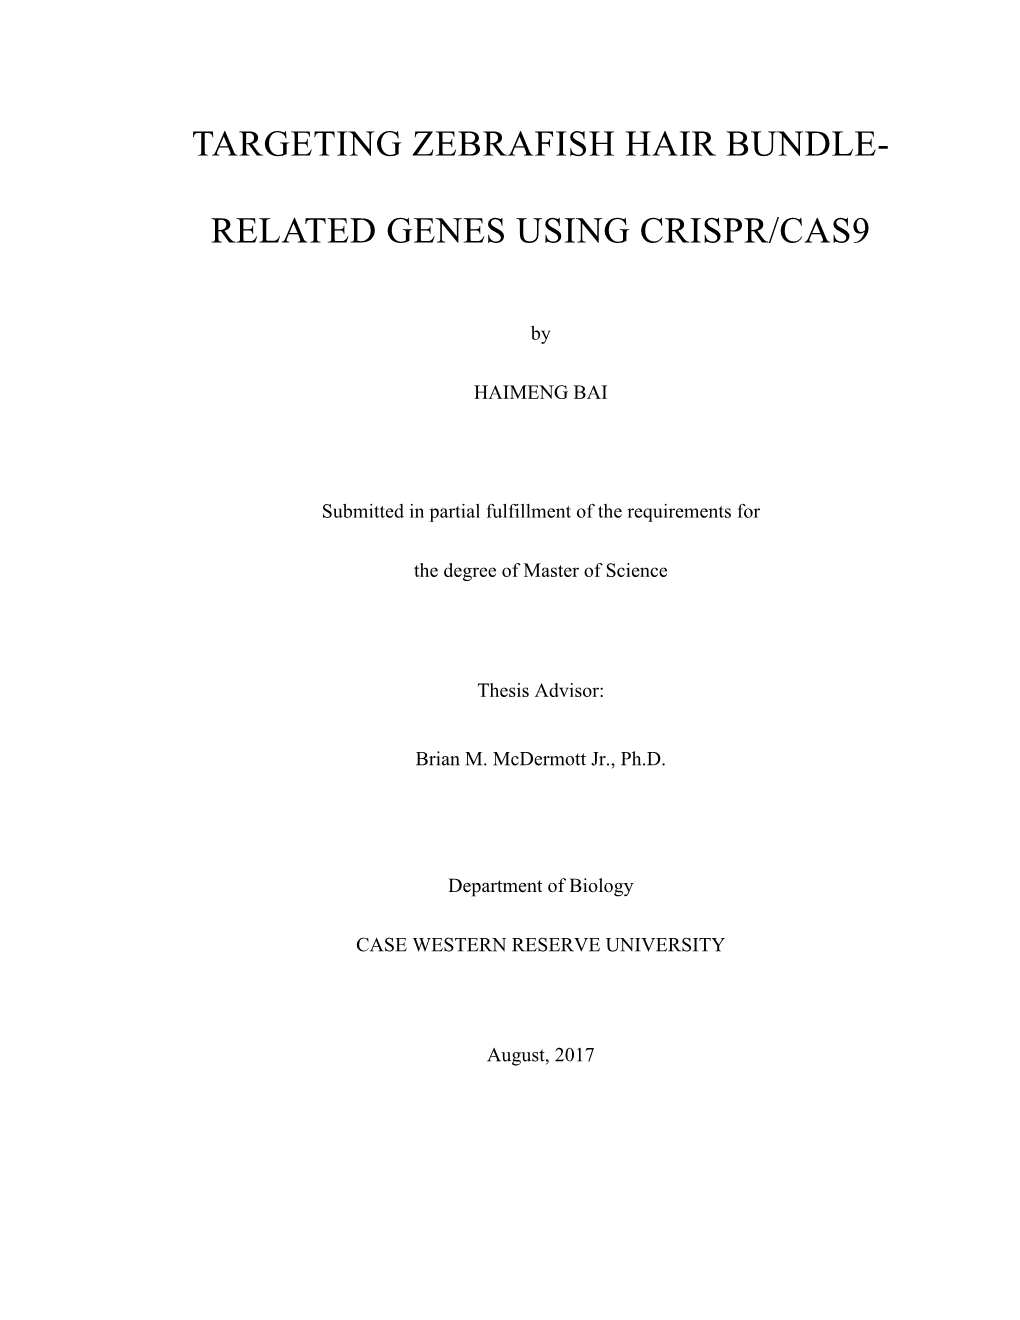 Related Genes Using Crispr/Cas9